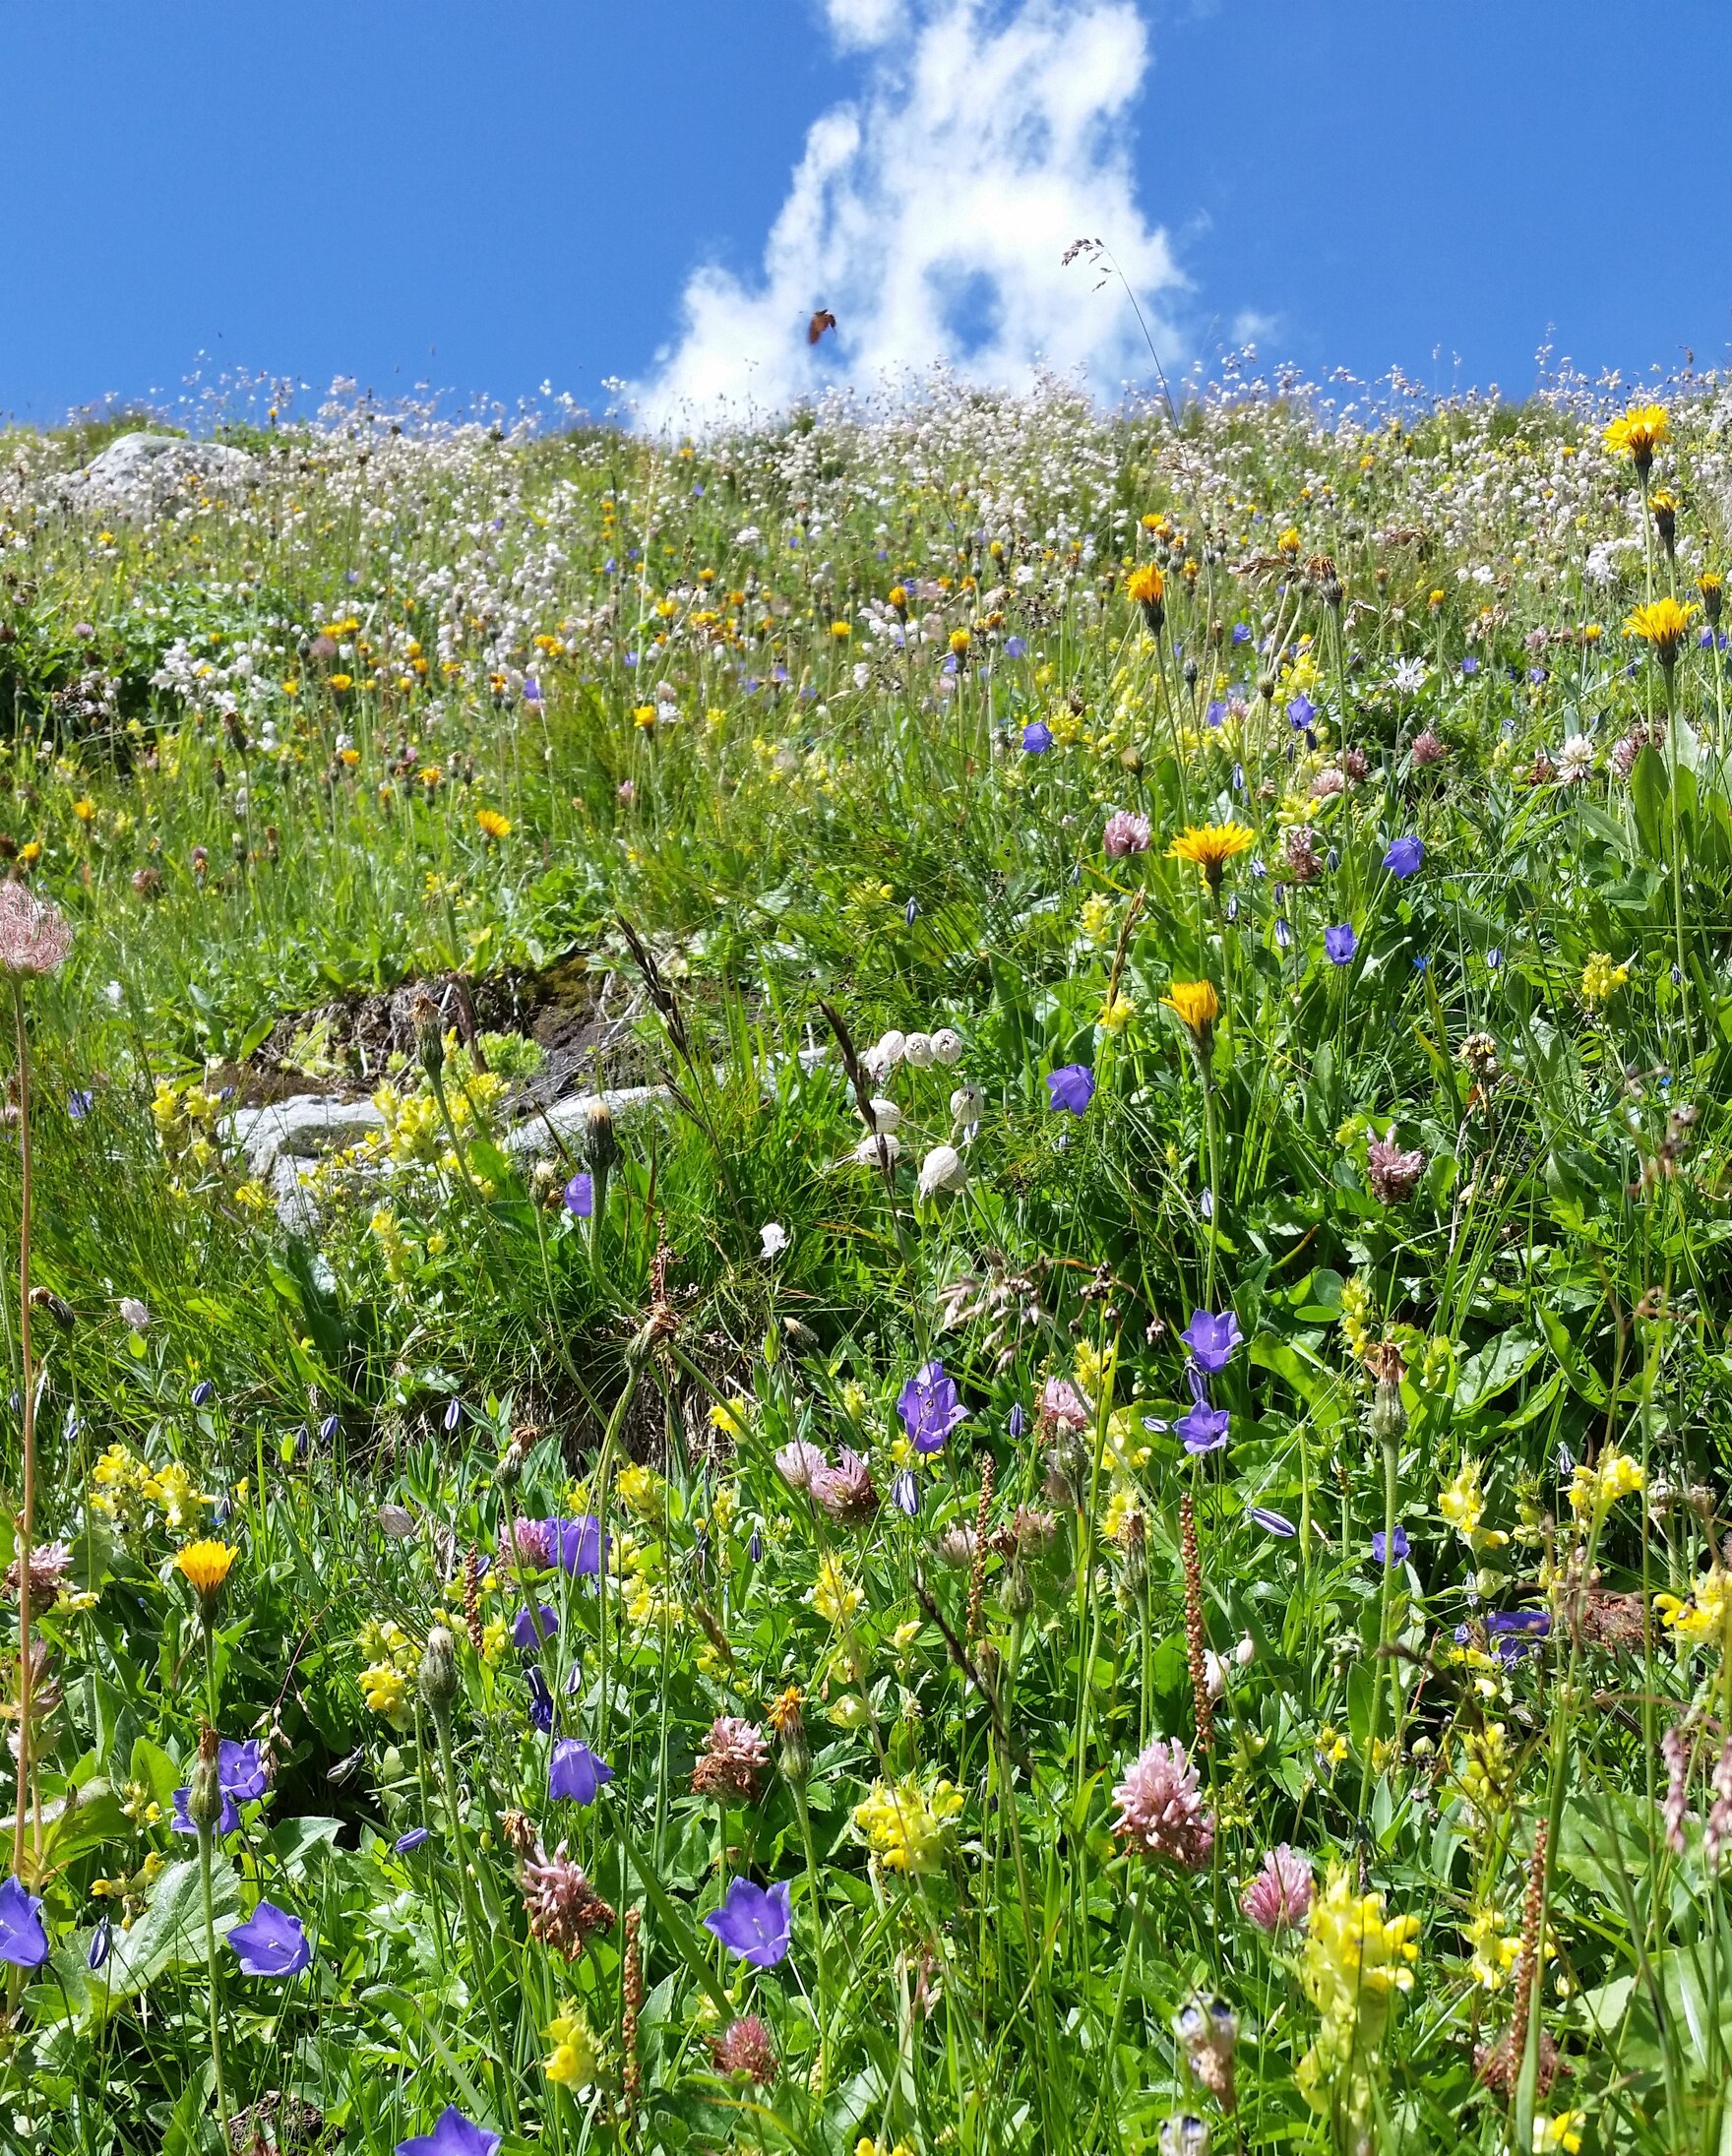 Sachsens Biologische Vielfalt: Foto einer bunt blühenden Sommerwiese, dahinter blauer Himmel